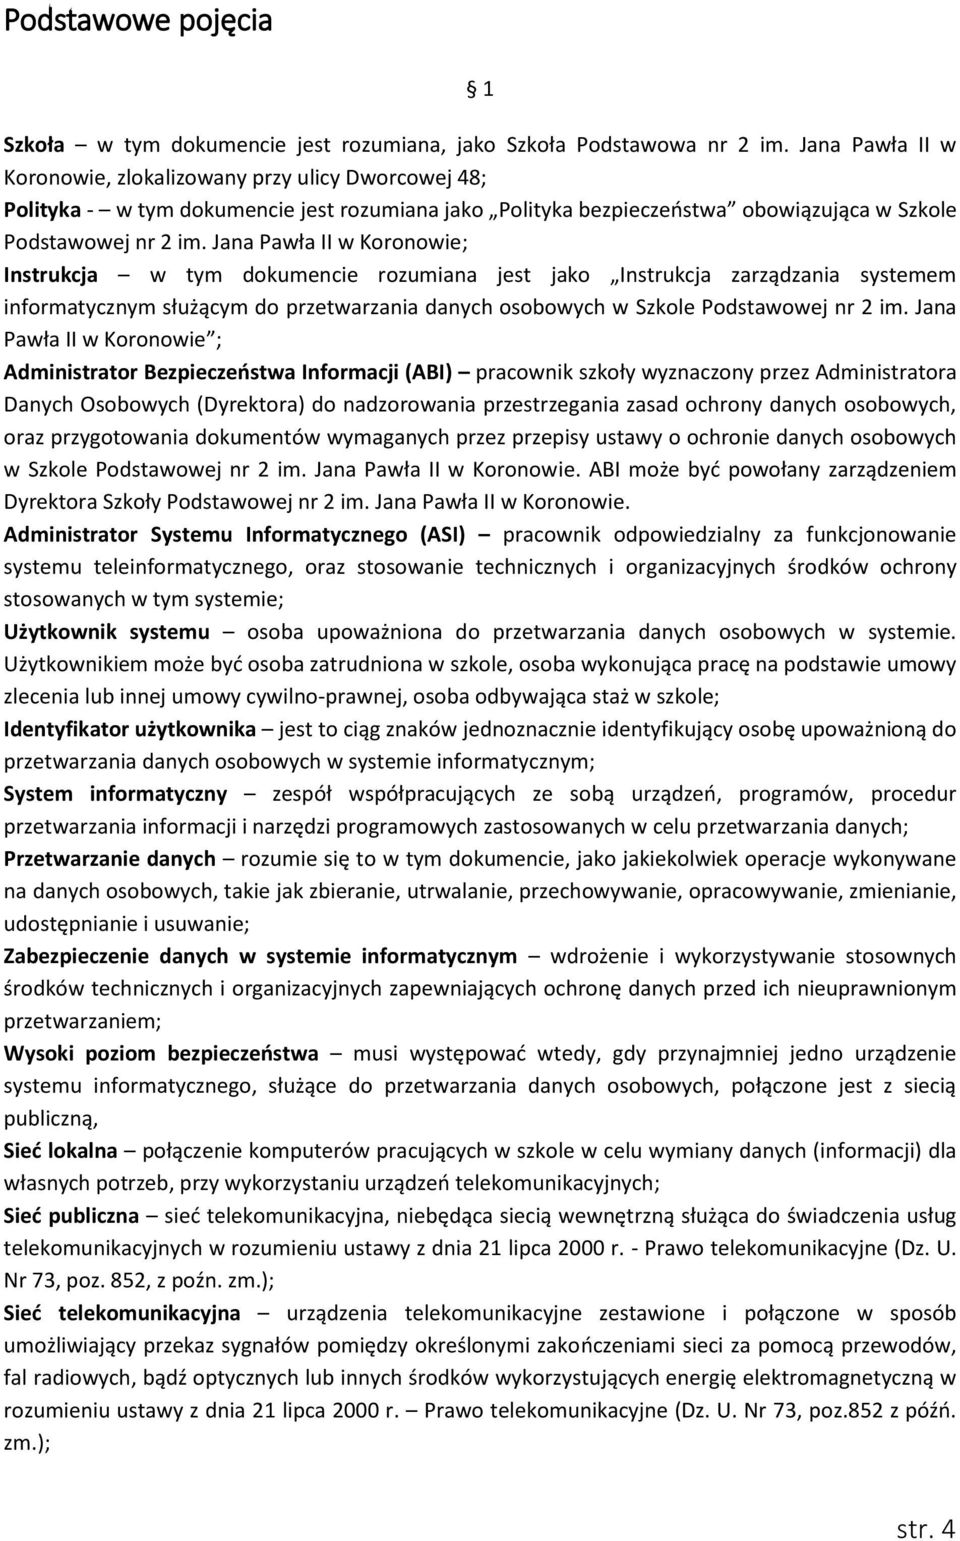 Jana Pawła II w Koronowie; Instrukcja w tym dokumencie rozumiana jest jako Instrukcja zarządzania systemem informatycznym służącym do przetwarzania danych osobowych w Szkole Podstawowej nr 2 im.